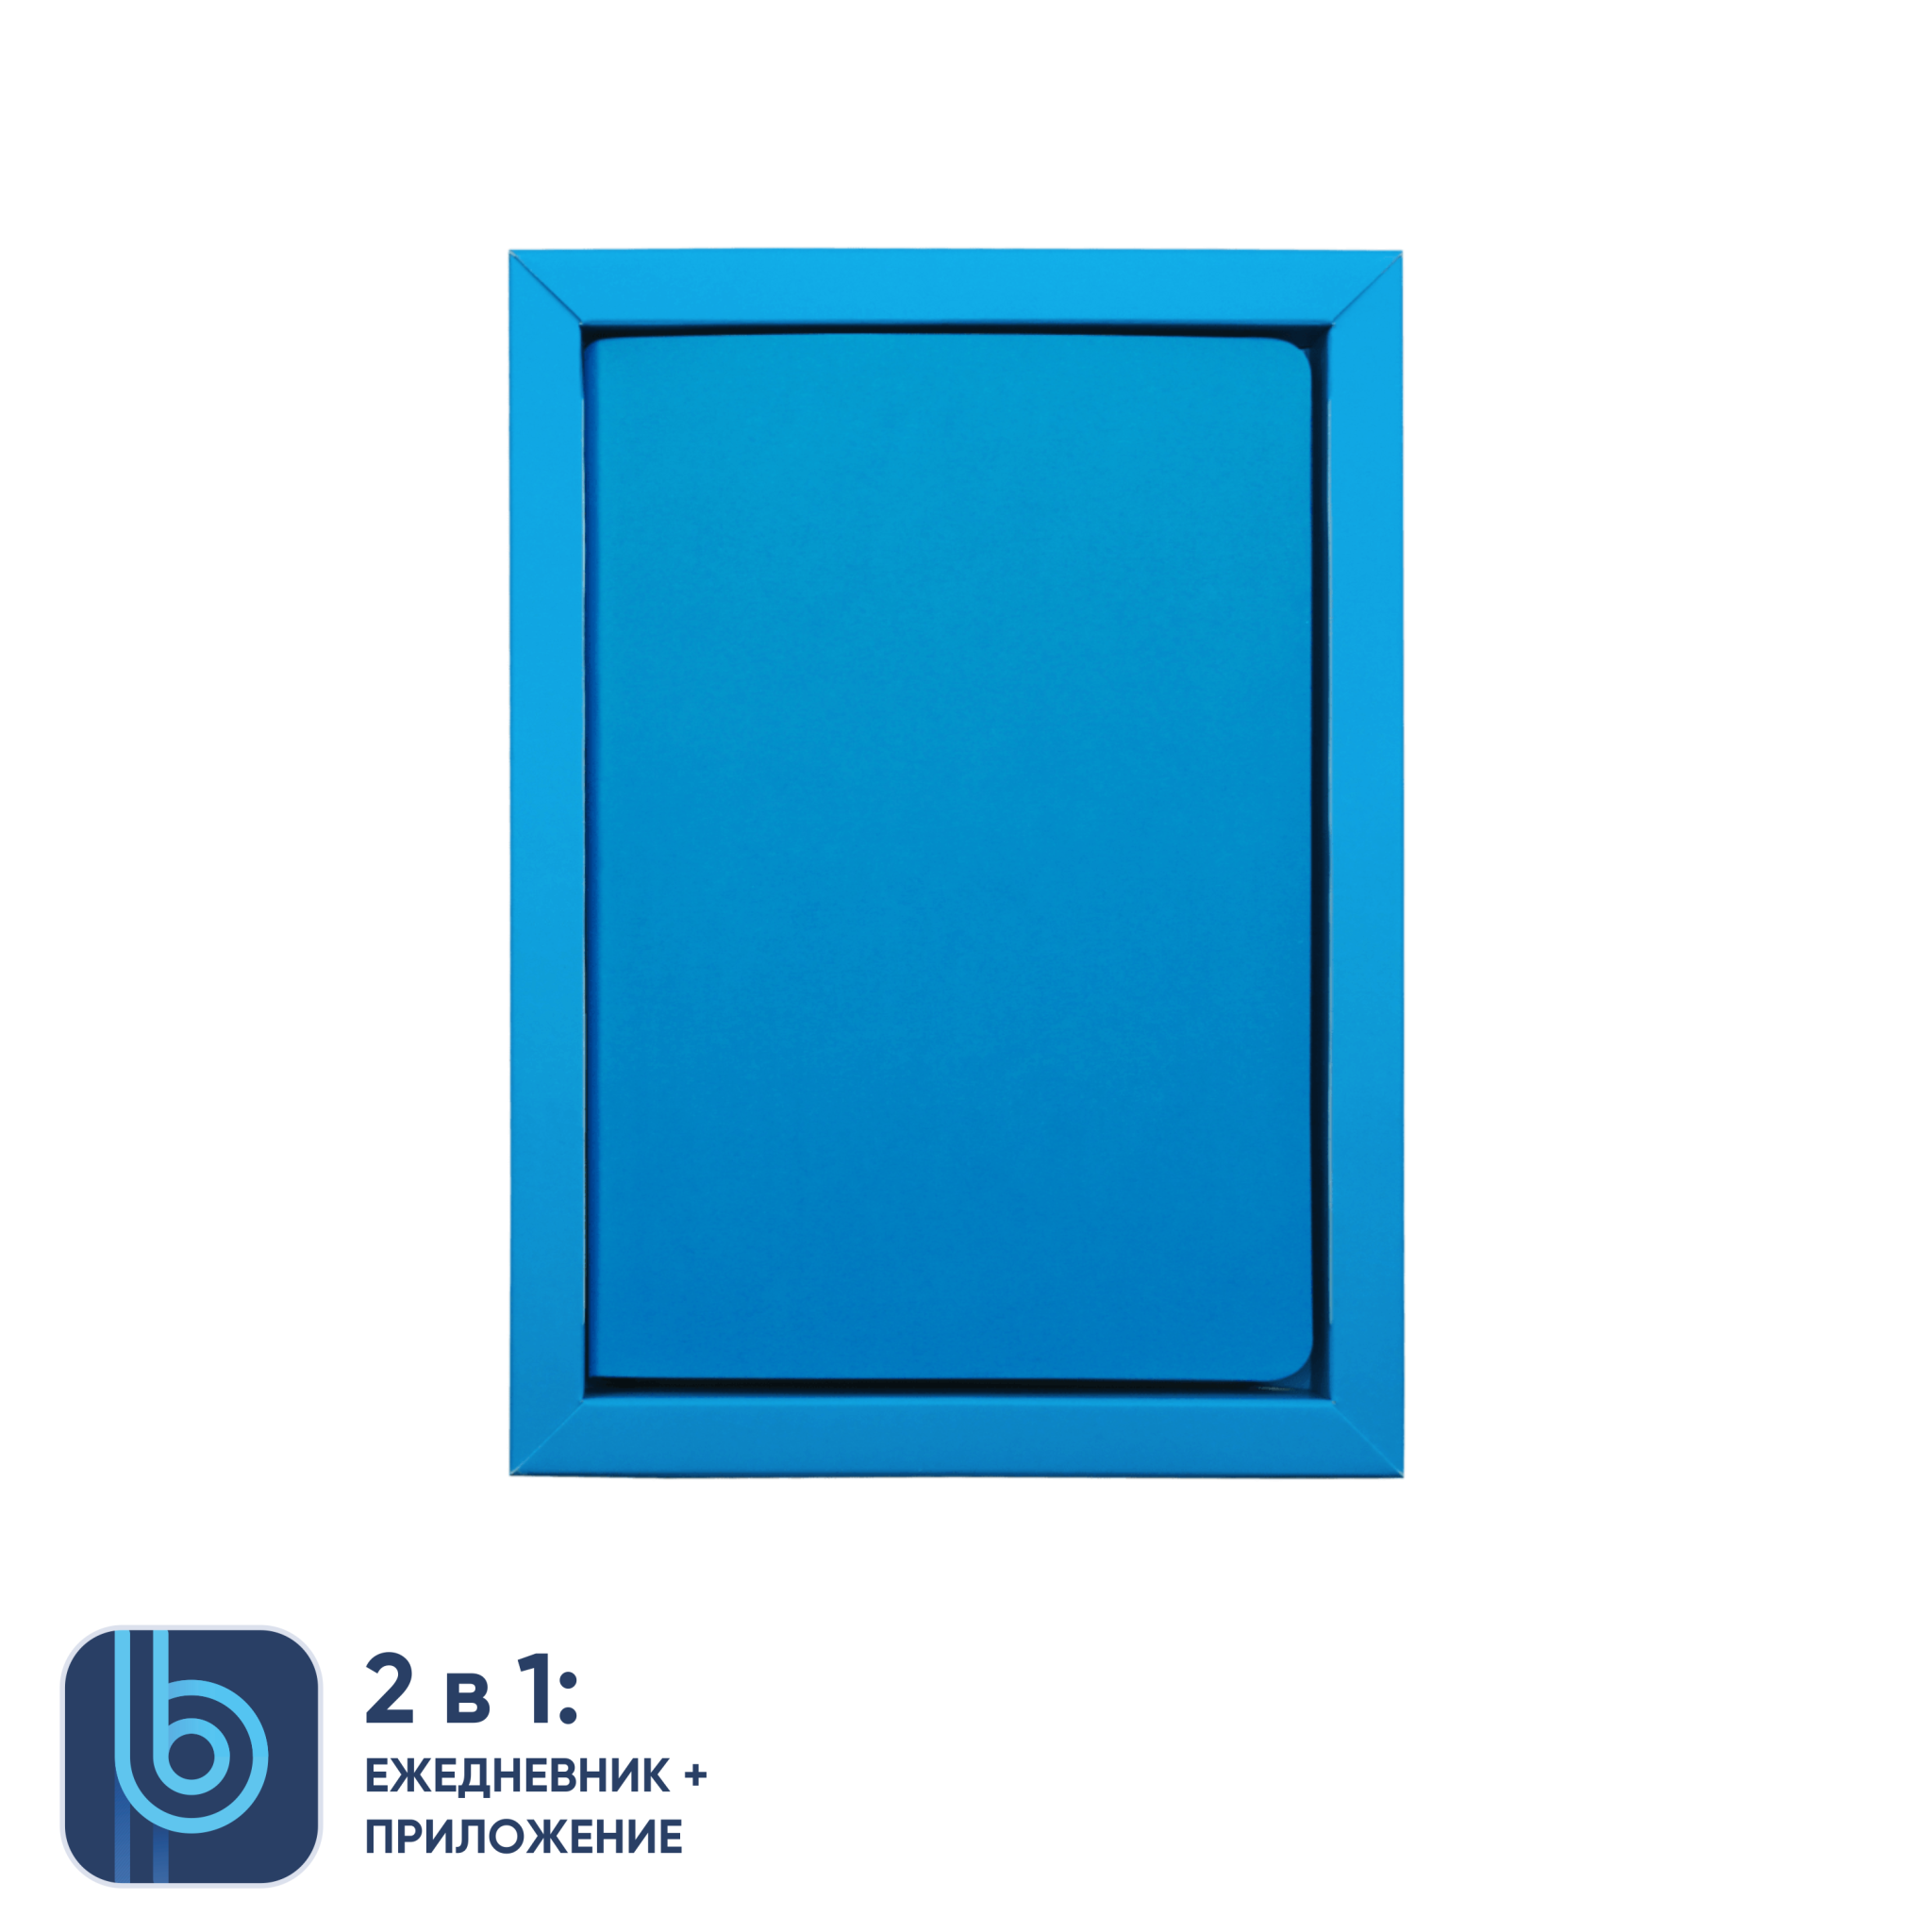 Ежедневник Bplanner.01 в подарочной коробке (голубой), голубой, картон